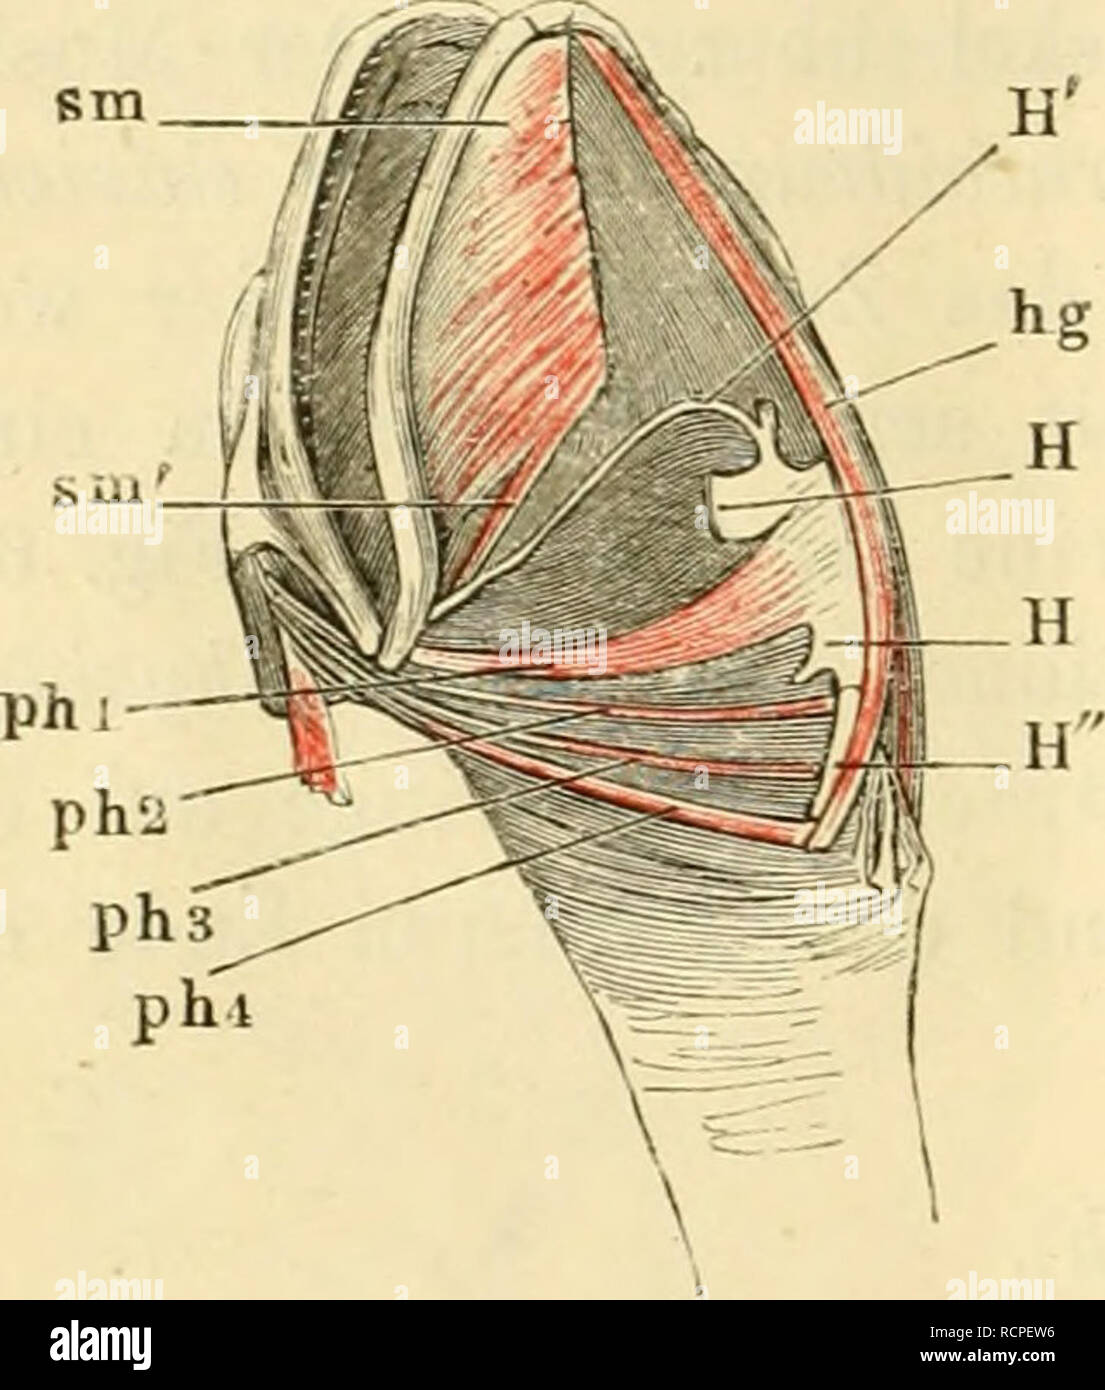 . Die Anatomie des Frosches; ein Handbuch fÃ¼r Physiologen, Ãrzte und Studire. 78 Muskelu des Zuugenbeins. lateralen Ausschnitt festsetzt. Die Hauptwirkung dieses Muskels scheint die eines w. constrictor pharyiujis zu sein. mm. petro- 23. 24. 25. miu. pct)'oJii/oidfi ])OStcriorcs (mihi) (Fig. G2 hyoidei post. pji 2, 3, 4). Cuvier, mm. stylohyoidei, 1. c. S. 537. Duoes, 20, 21, 22, masto-hyoidieus (Fig. 44). Zenker, petro-hyoideus siiperior uud iuf. Klein, stylo-layoideus, 1. c. S. 18. Drei lange und dünne Muskeln, die in ziemlich paralleler Rich- tung hinter einander liegen und vom Felsenbein  Stock Photo